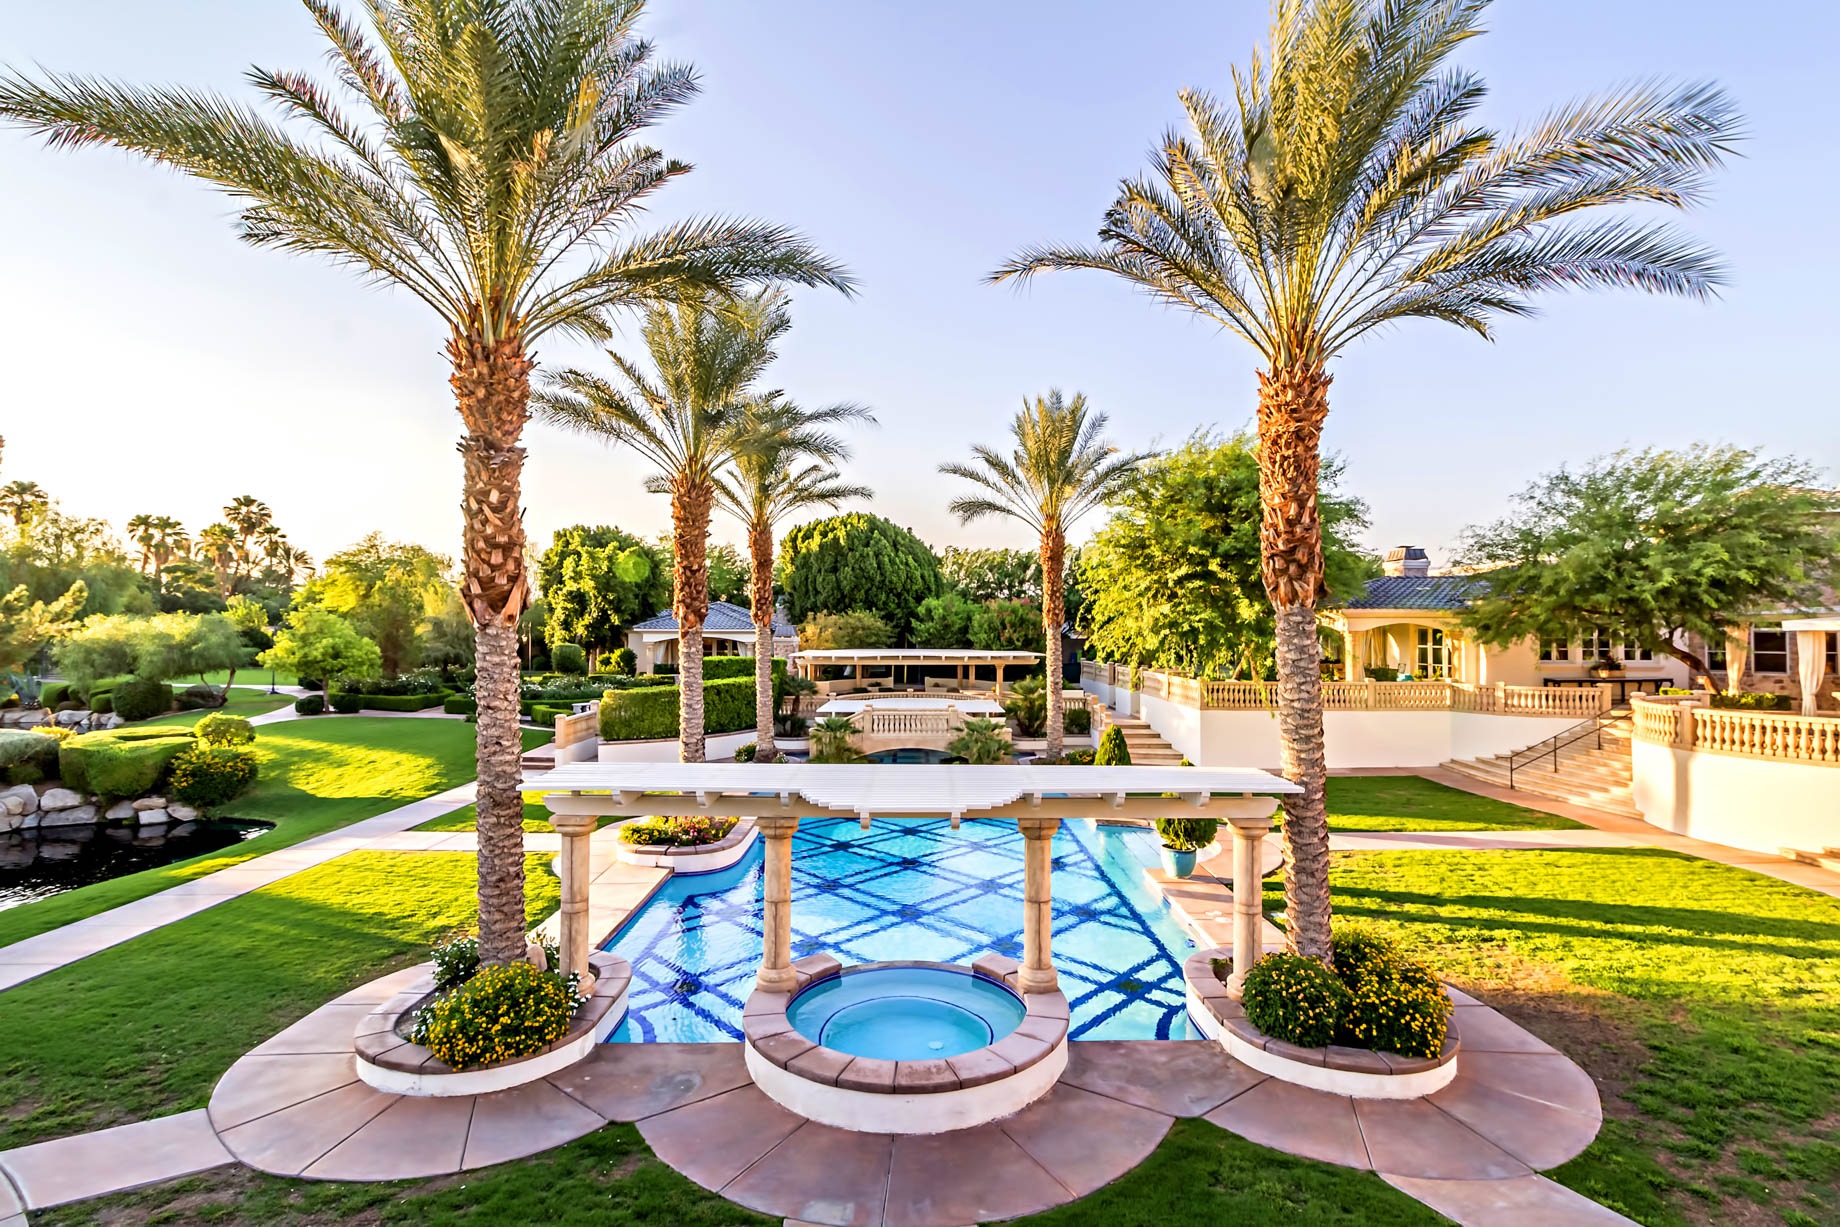 Casa Rancho Mirage – 1 St. Petersburg Ct, Rancho Mirage, CA, USA